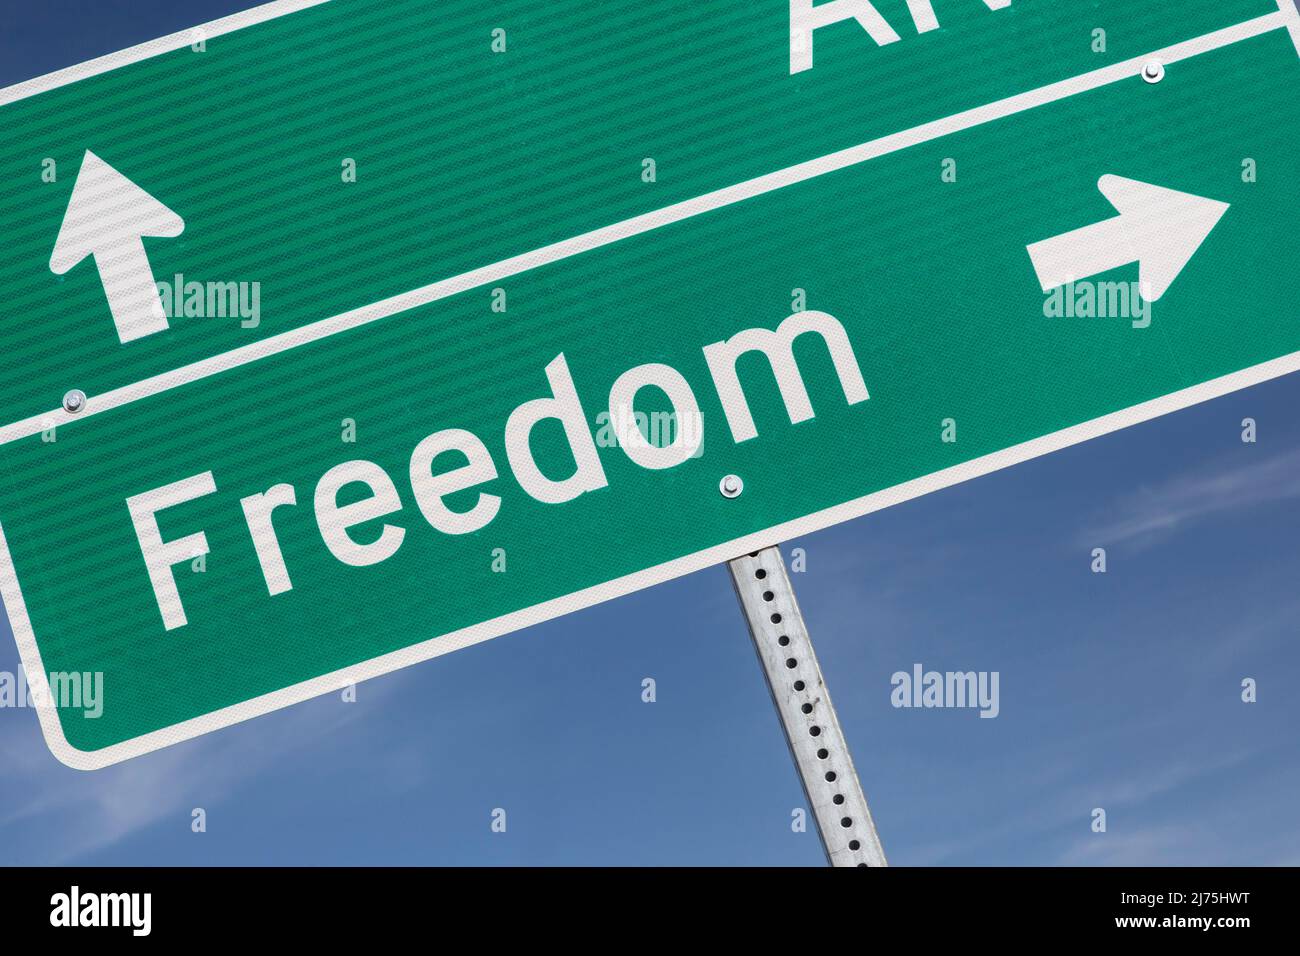 Freedom, Oklahoma - Un panneau indique la petite ville de Freedom, dans l'ouest de l'Oklahoma. Banque D'Images